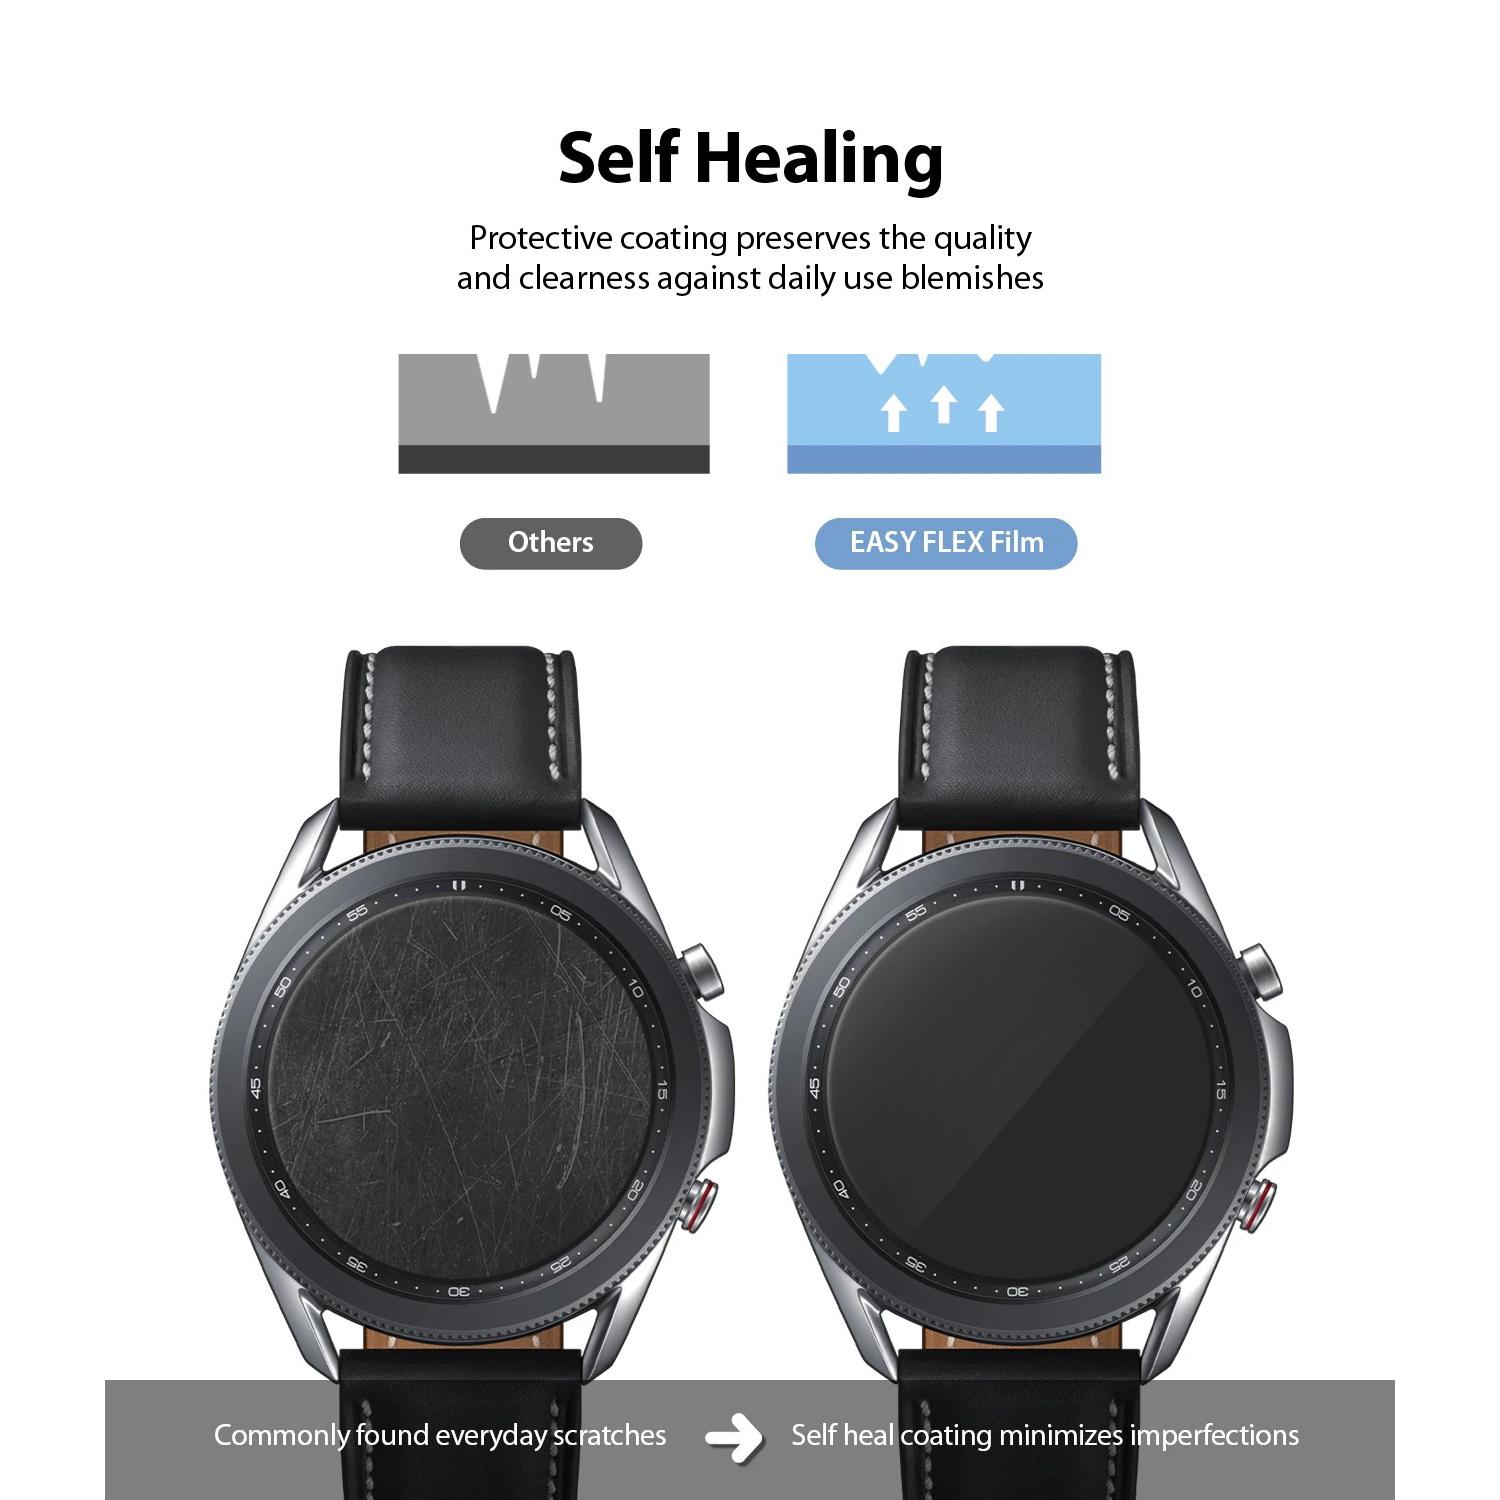 Samsung Galaxy Watch 3 45mm Easy Flex (3-pack)